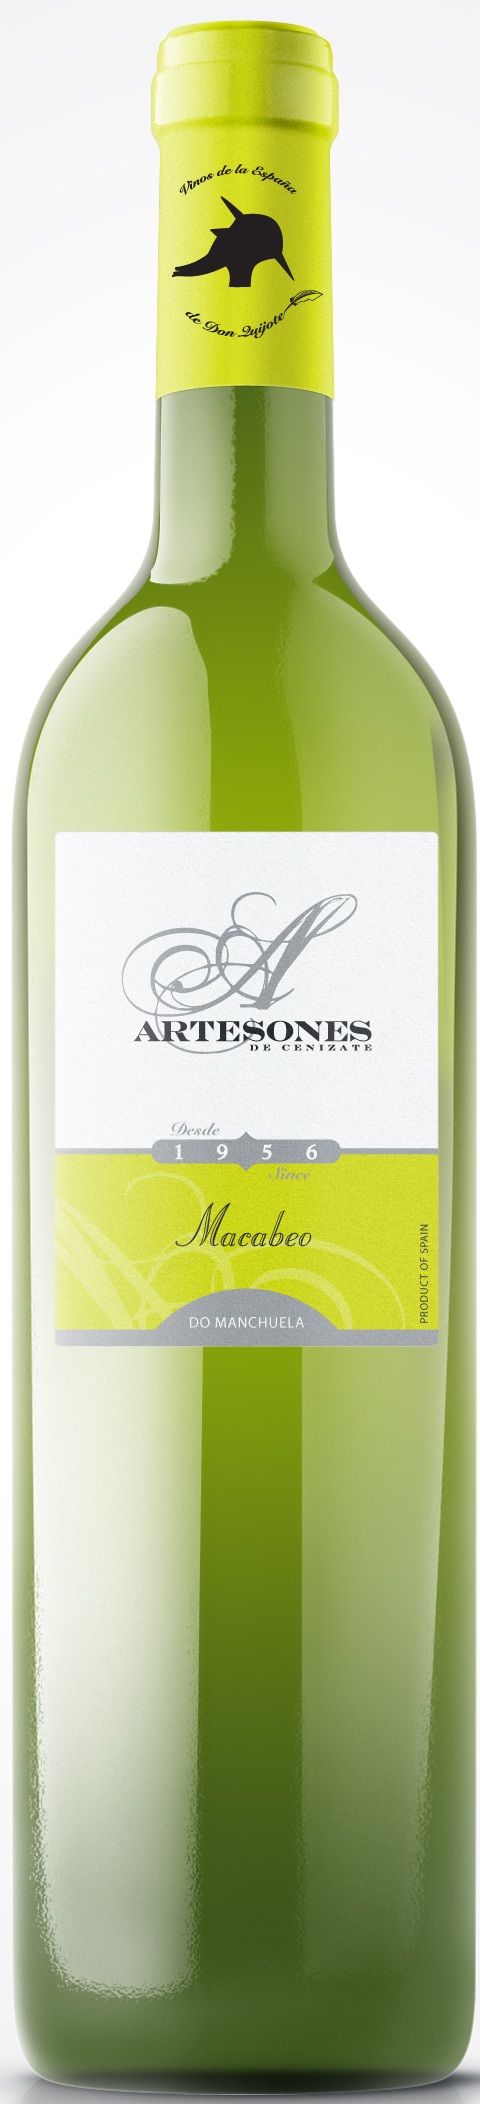 Bild von der Weinflasche Artesones Macabeo